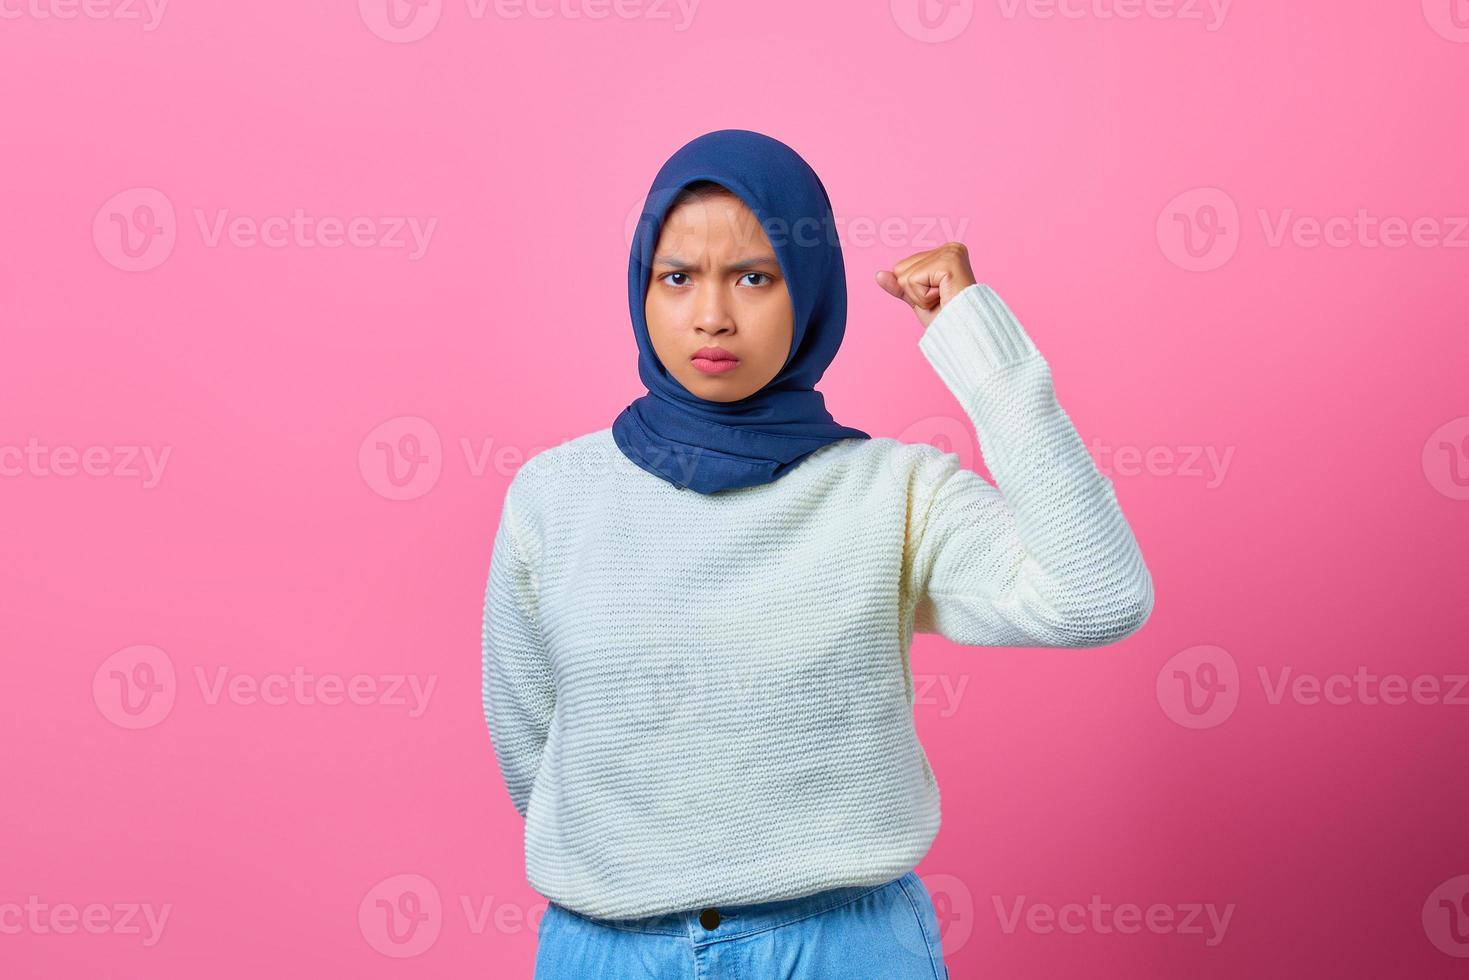 retrato de uma linda mulher asiática levantando a mão com expressão de raiva foto